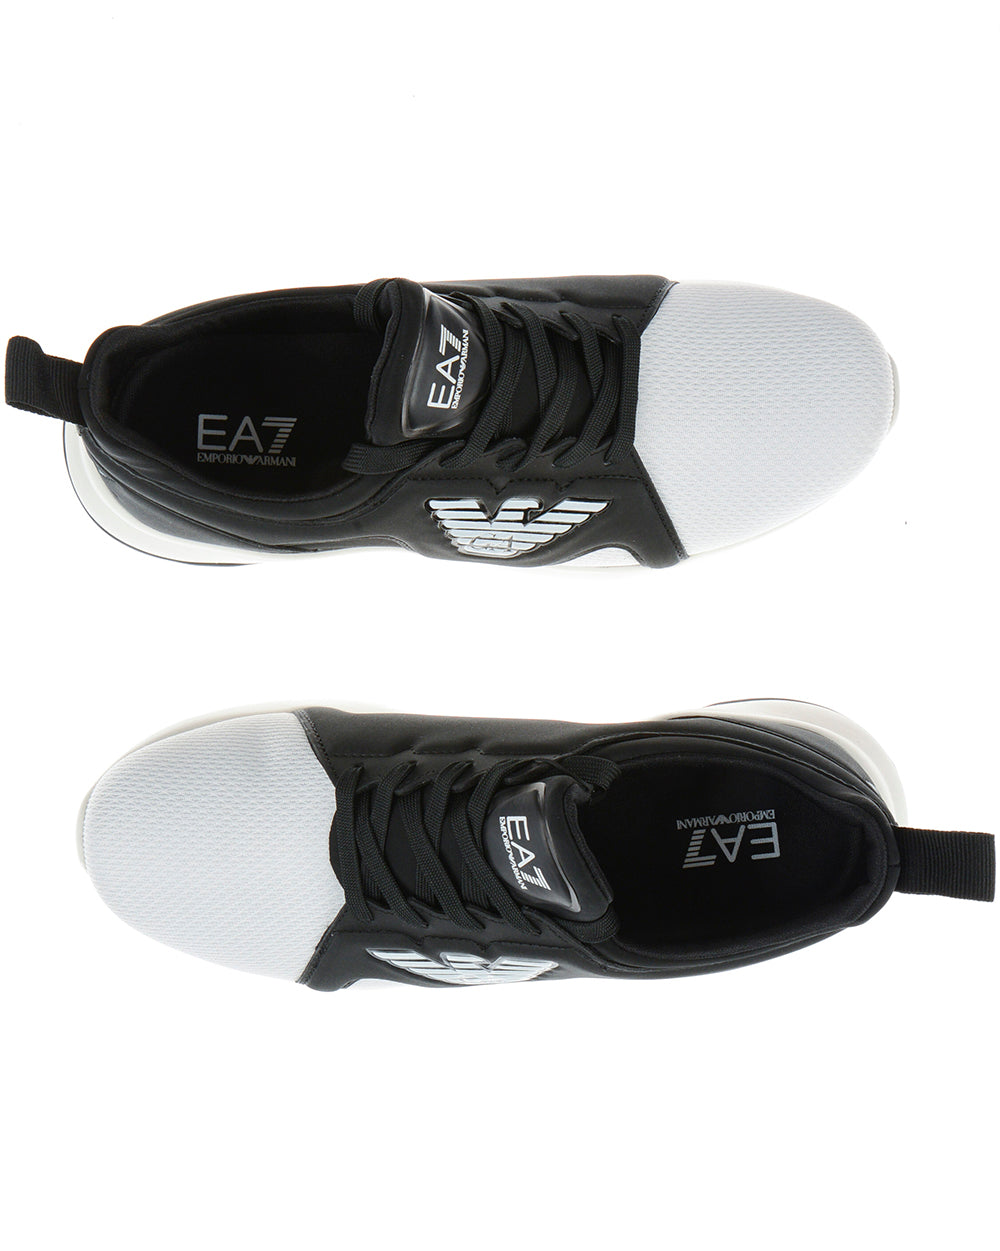 Scarpe Sneakers Emporio Armani EA7 Bianche Taglia 7,5 - mem39